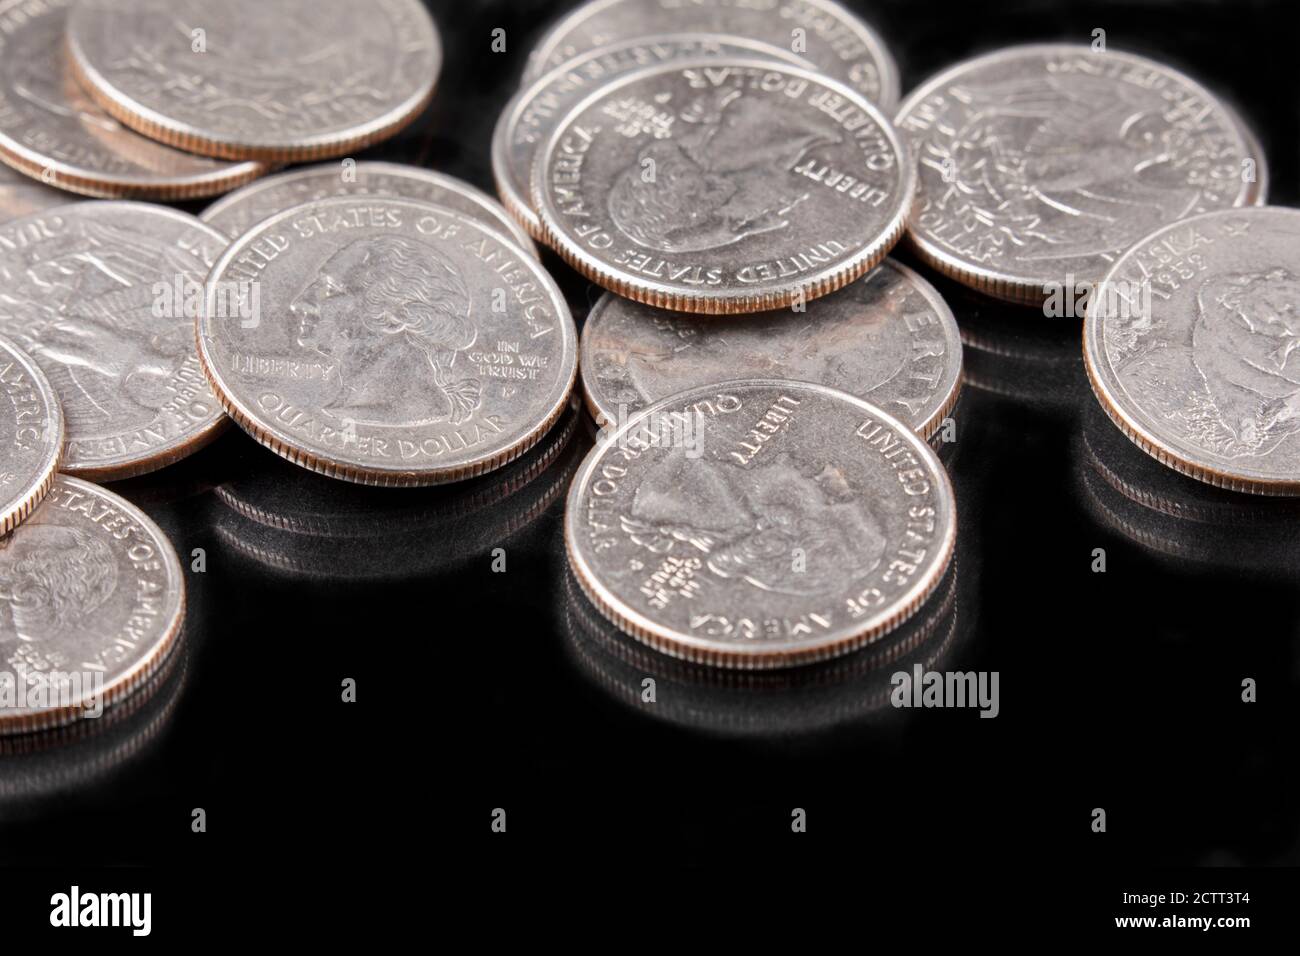 Ein Hintergrund der United States Quarters Münzen auf schwarzem Hintergrund Stockfoto